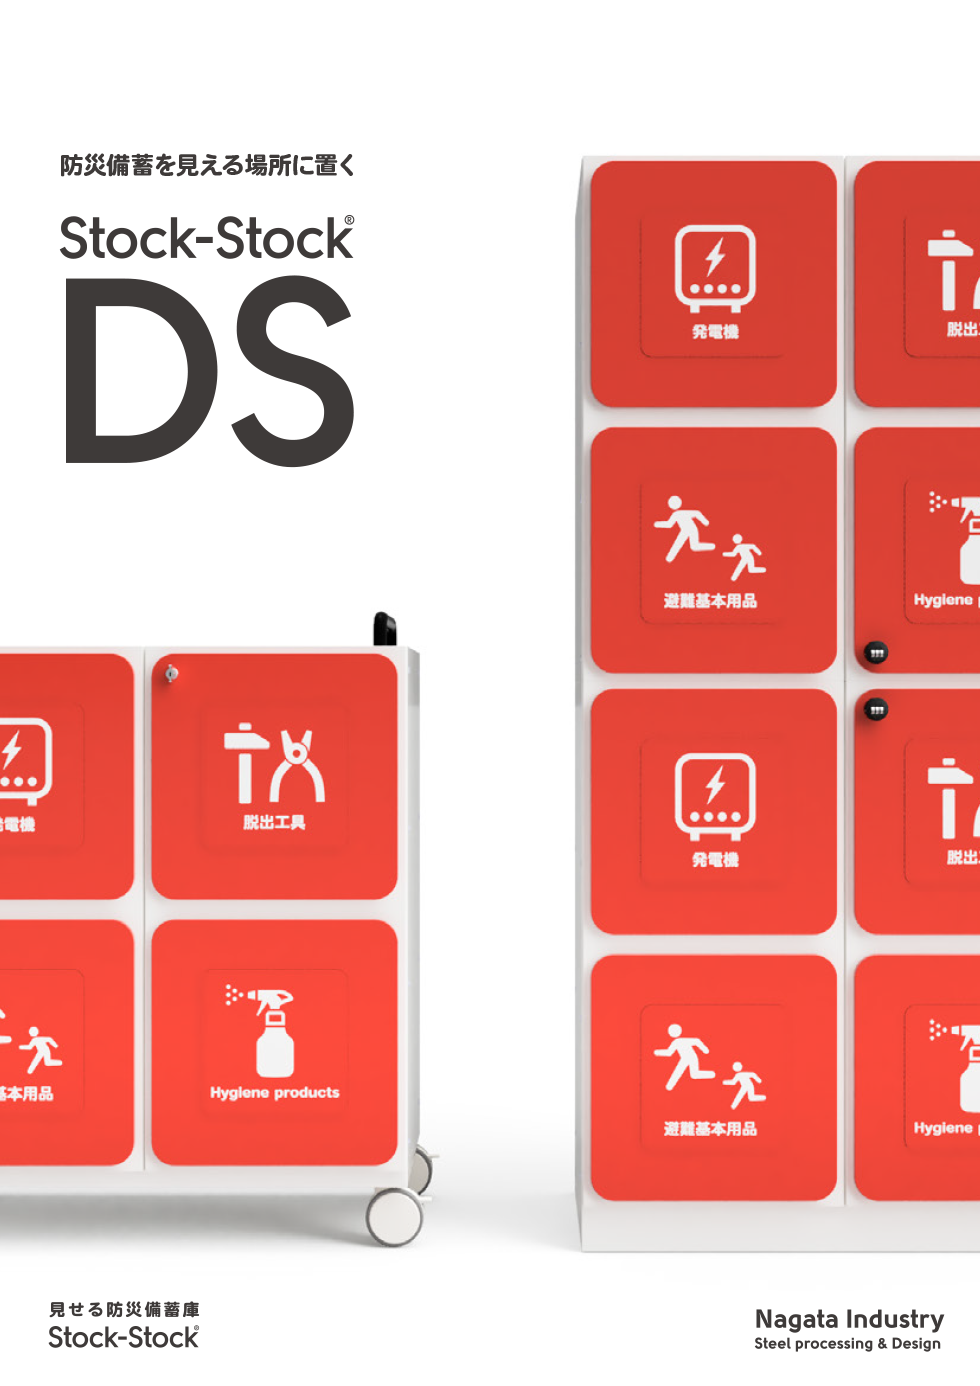 ストックストックの新製品シリーズ「防災備蓄保管庫 Stock-Stock DS」